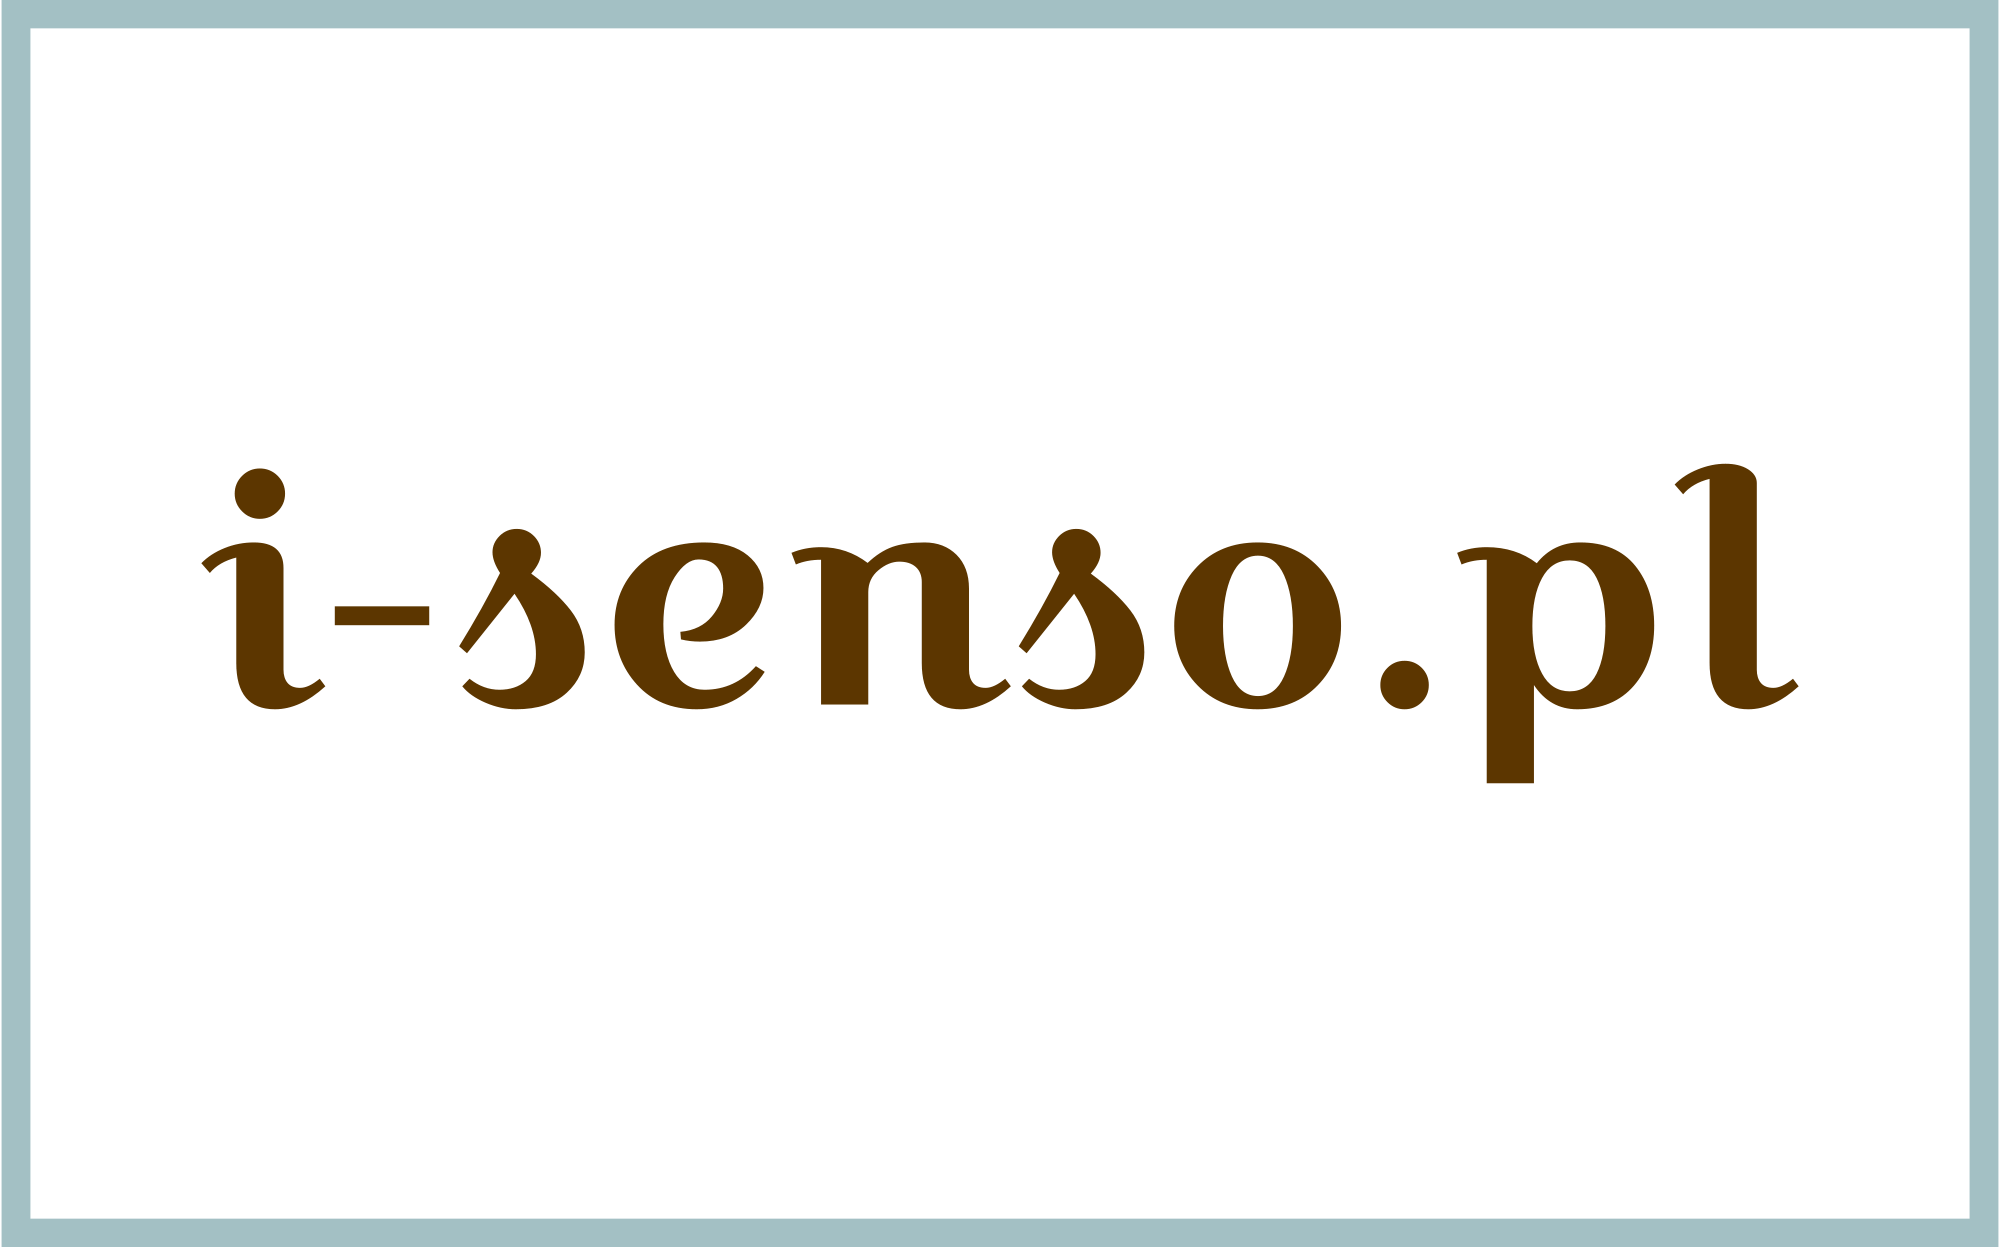 I-senso